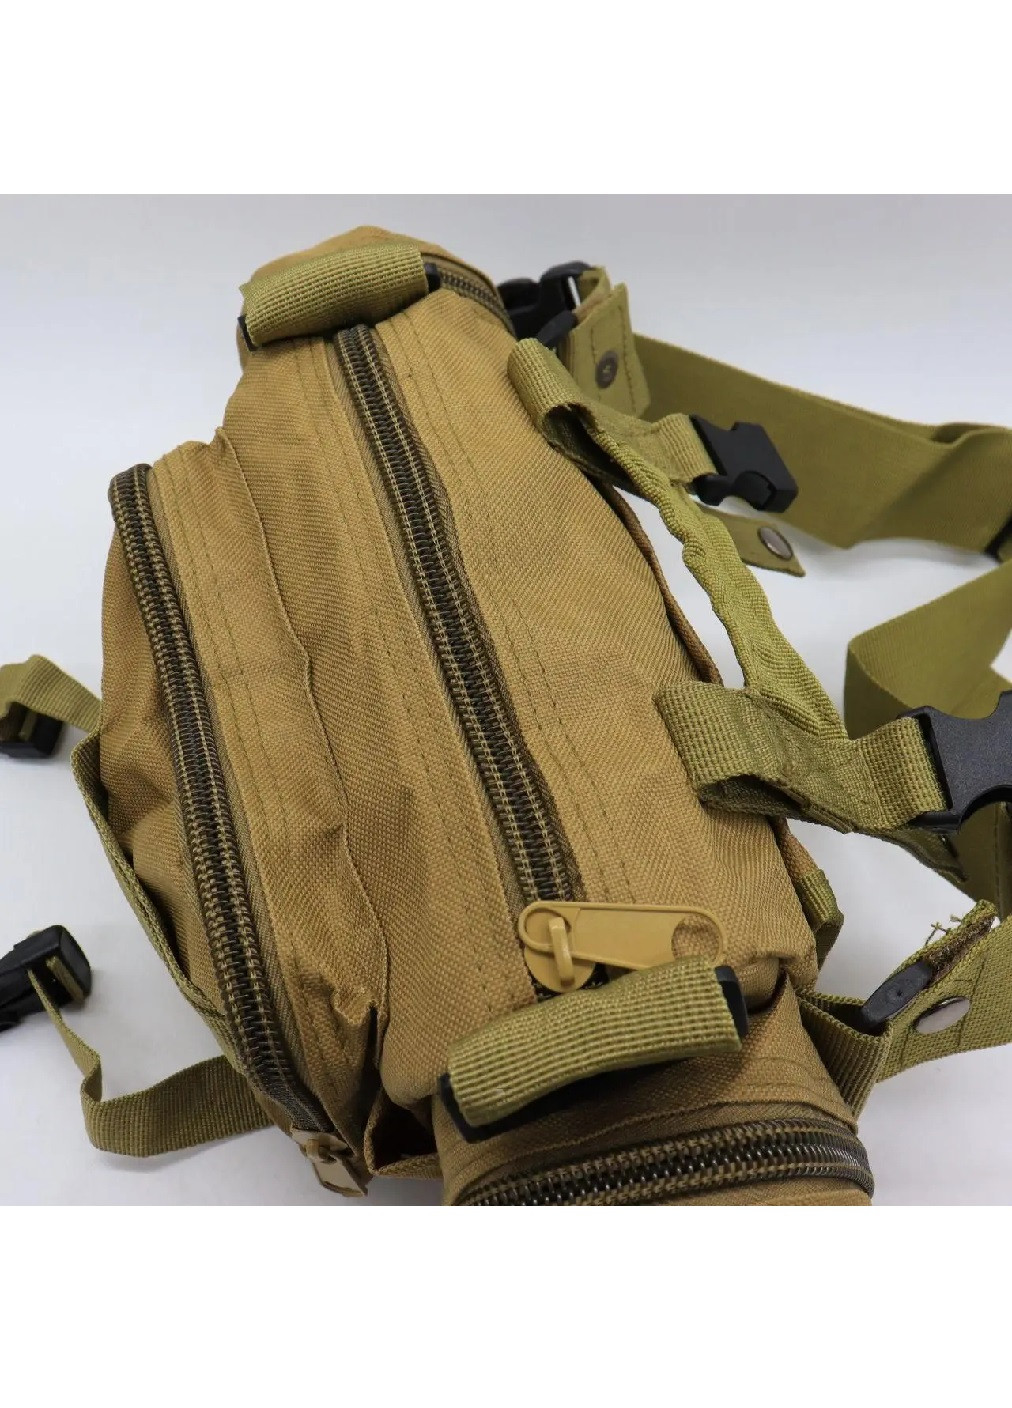 Тактична сумка через плече компактна армійська для риболовлі полювання туризму на 5 л 35х14х18 см (474205-Prob) Пісочна Unbranded (257597018)